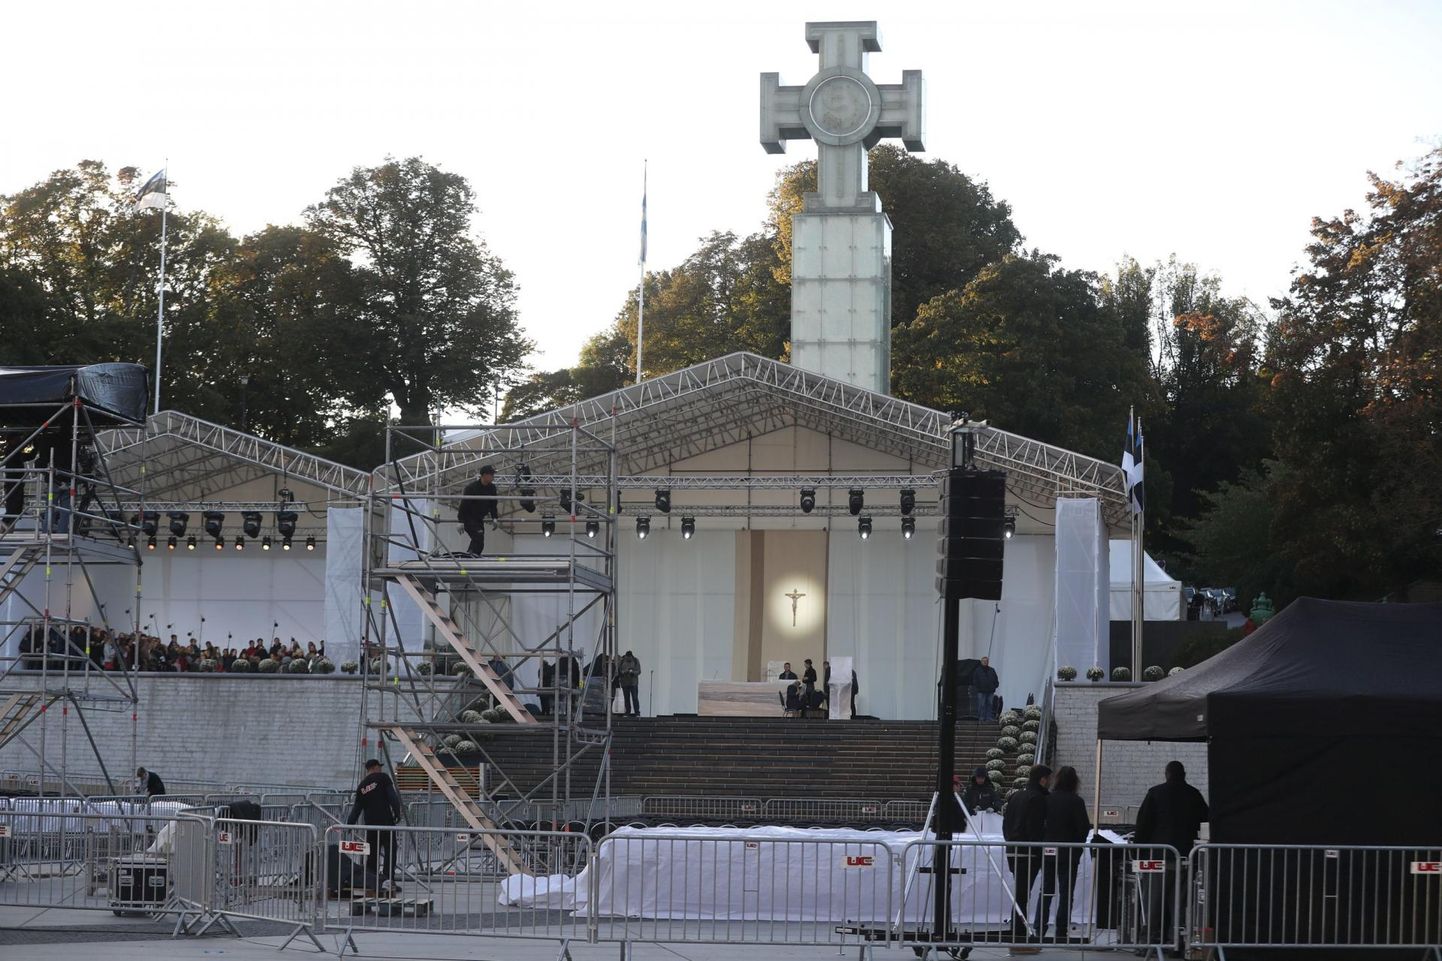 Eile anti Vabaduse väljakule viimast lihvi. Päeva olulisimale üritusele oodatakse 12 000 inimest. Enamik on eestlased, kuid on ka palverändureid välismaalt, näiteks Soomest, Venemaalt ja Poolast.